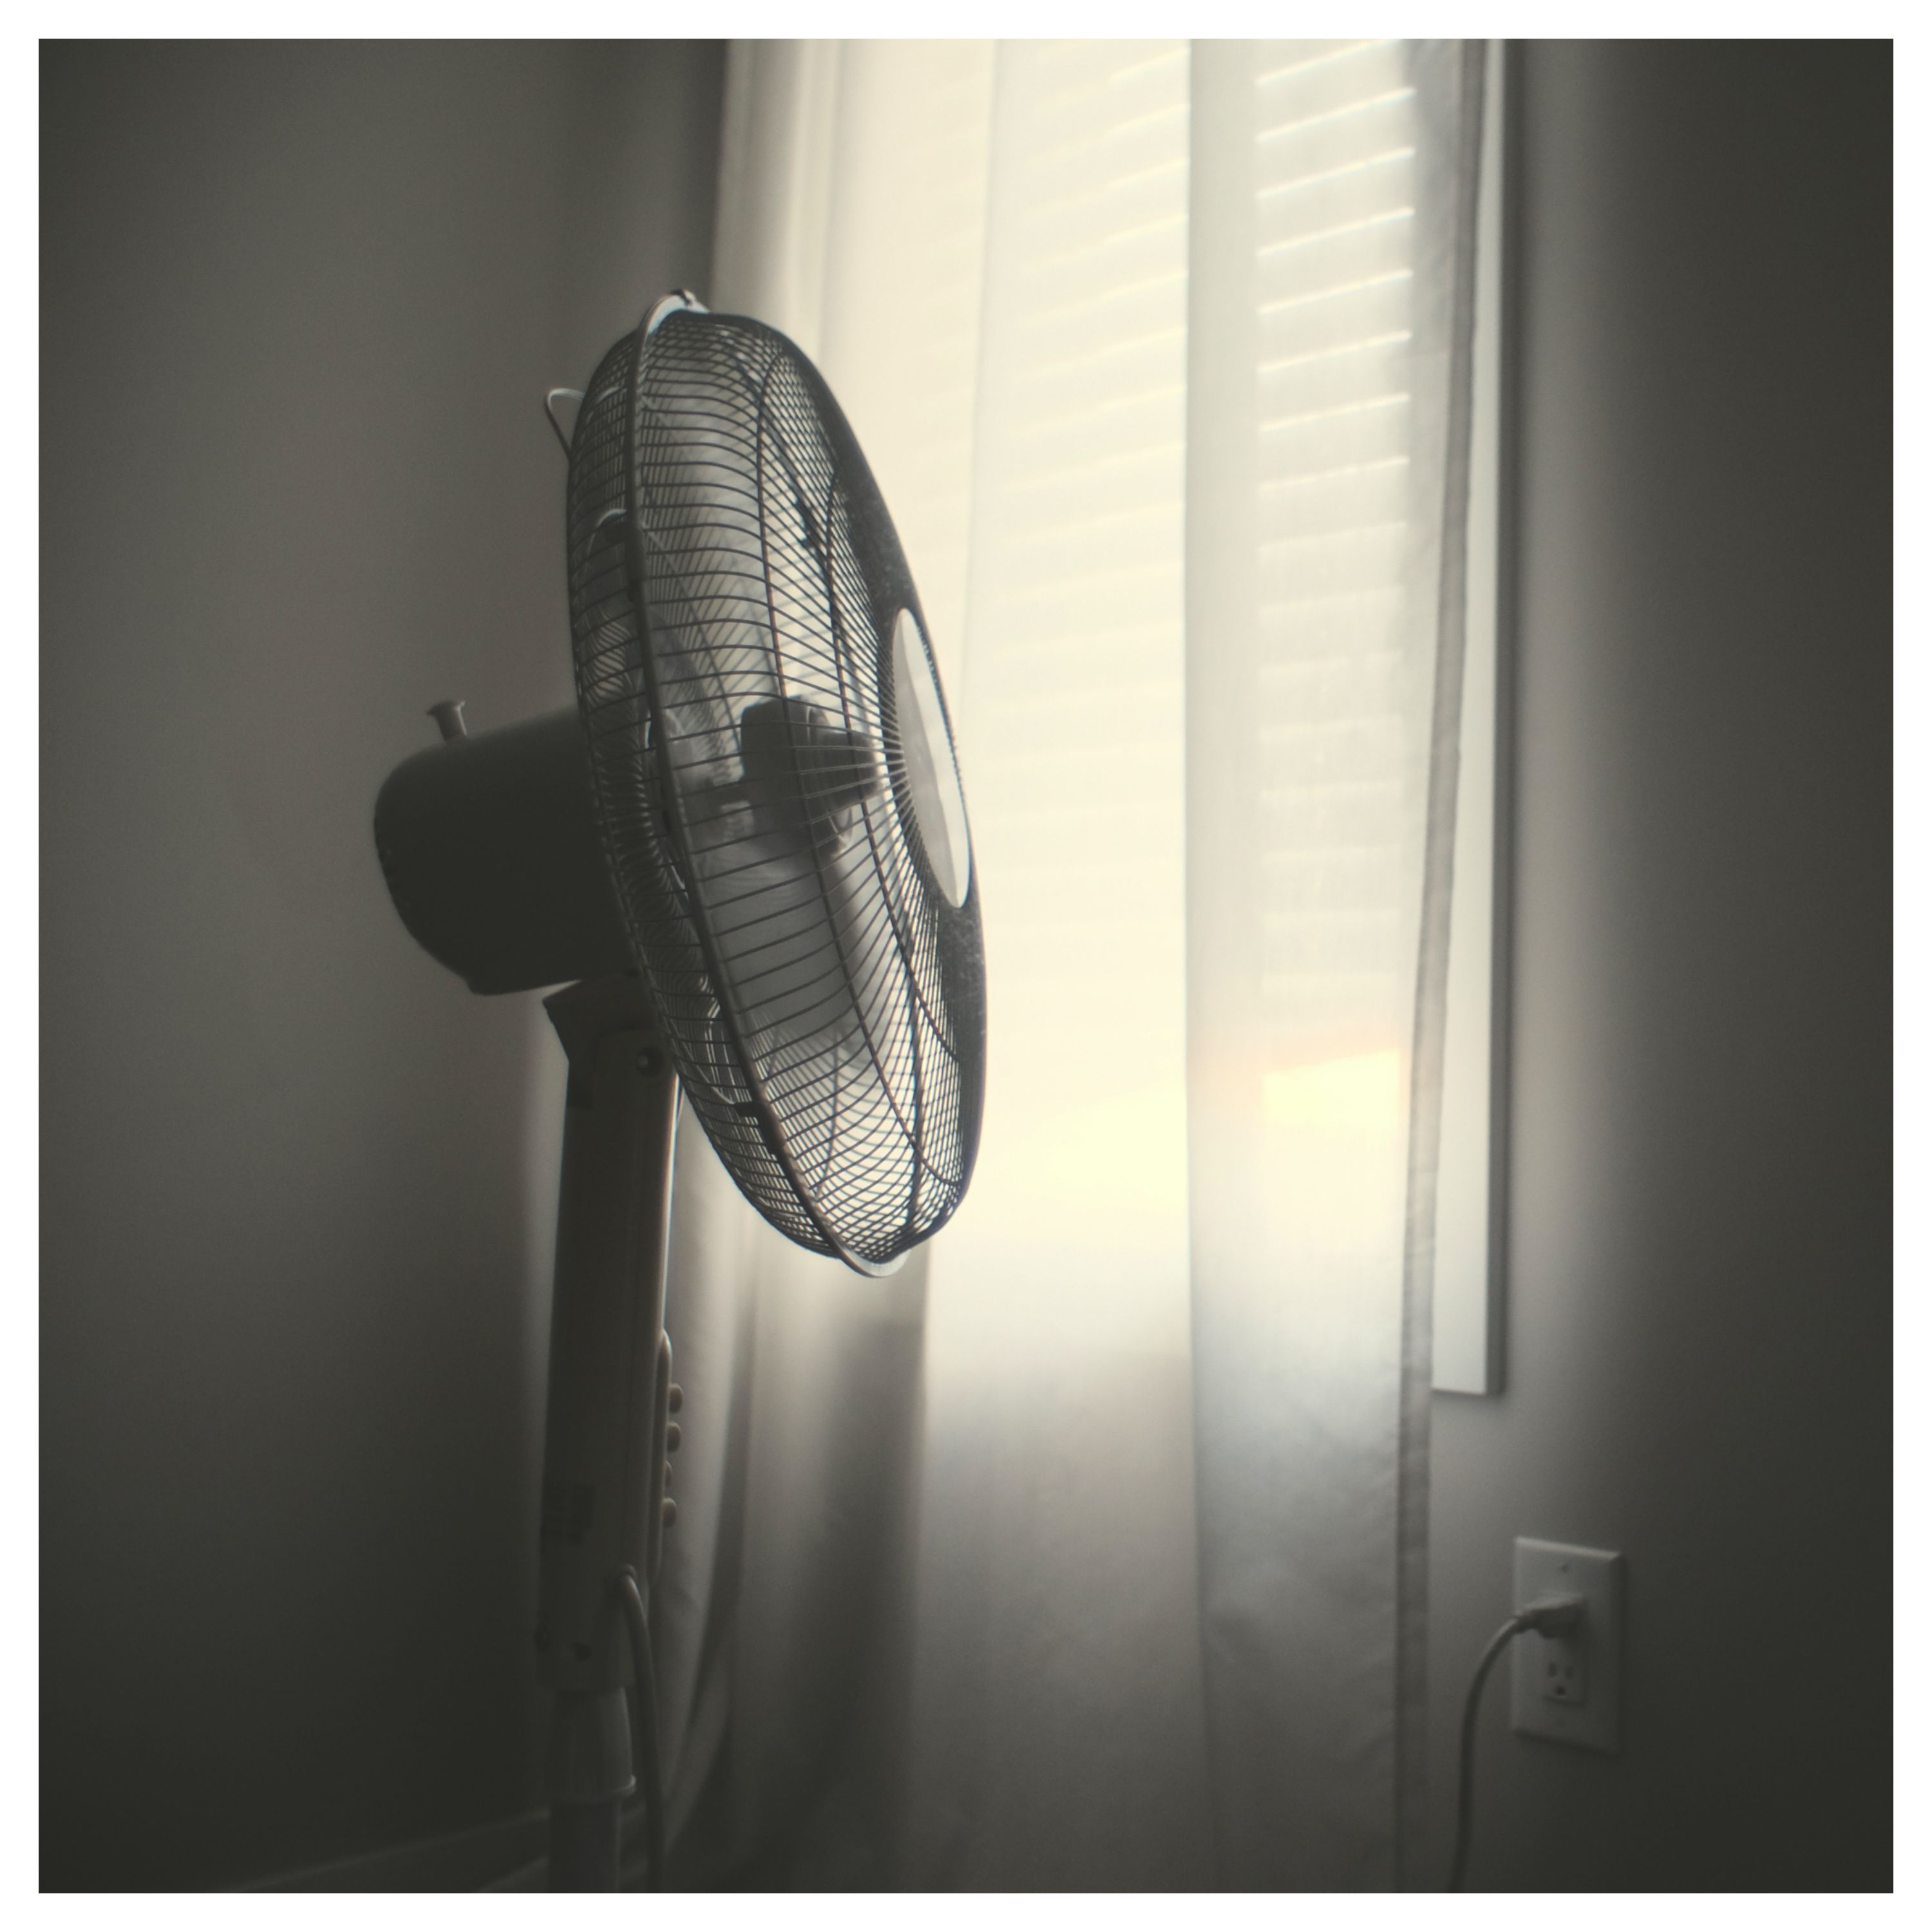 Un ventilateur branché dans une pièce avec un volet baissé